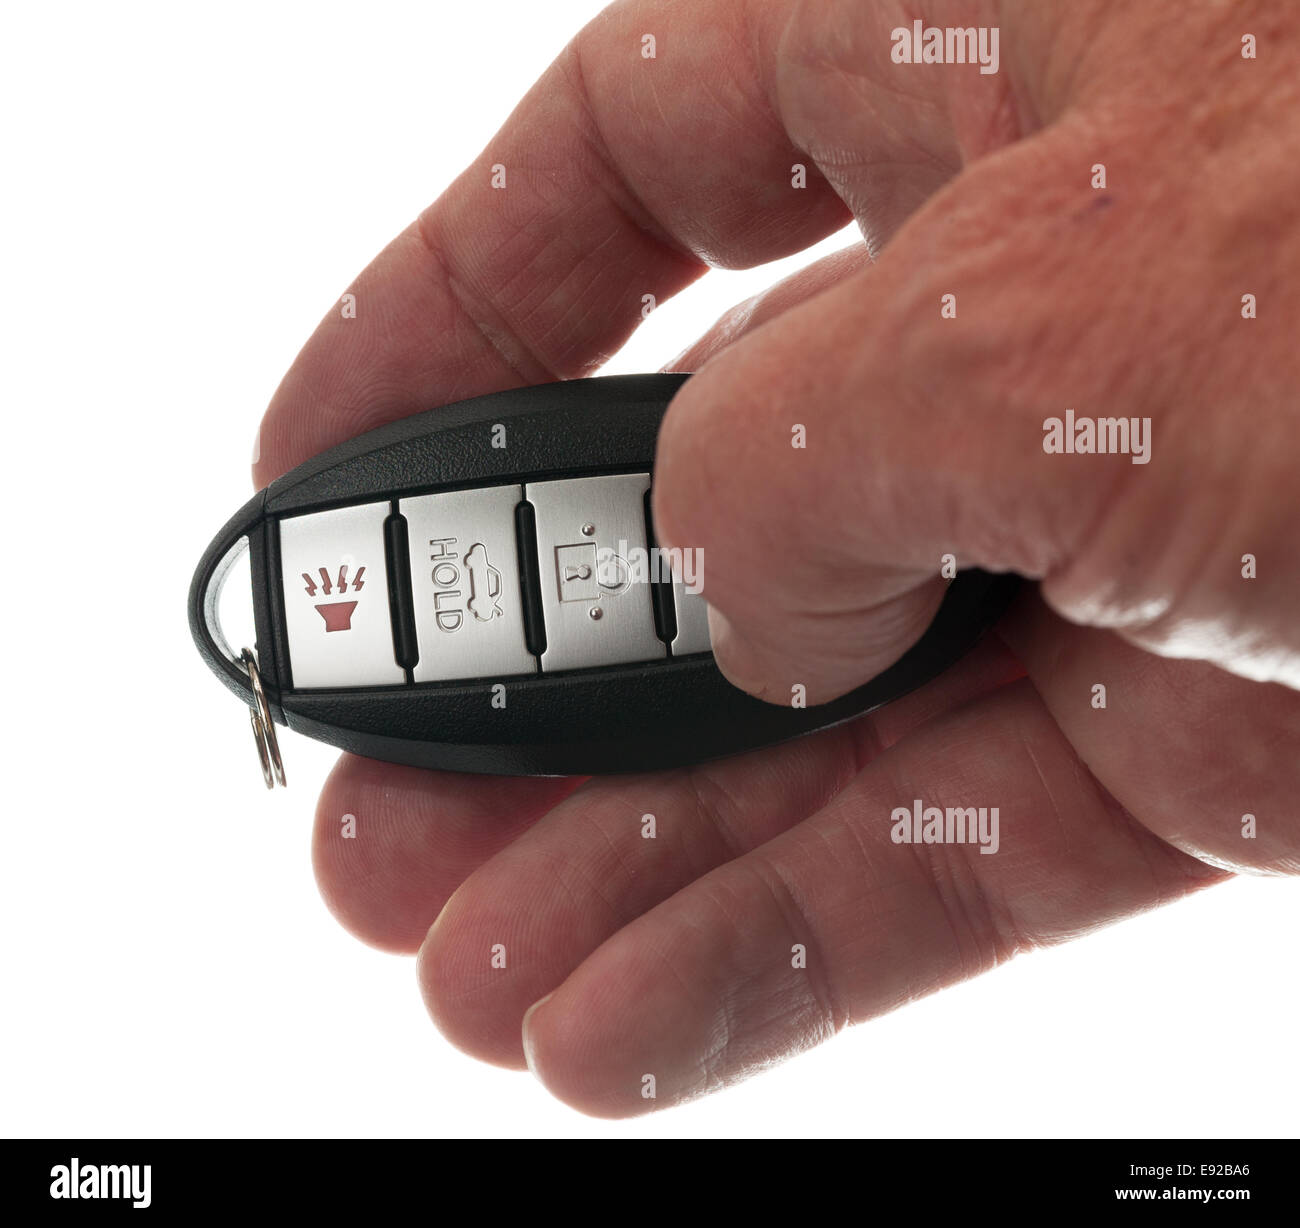 Thumb on keyless wireless door opener Stock Photo